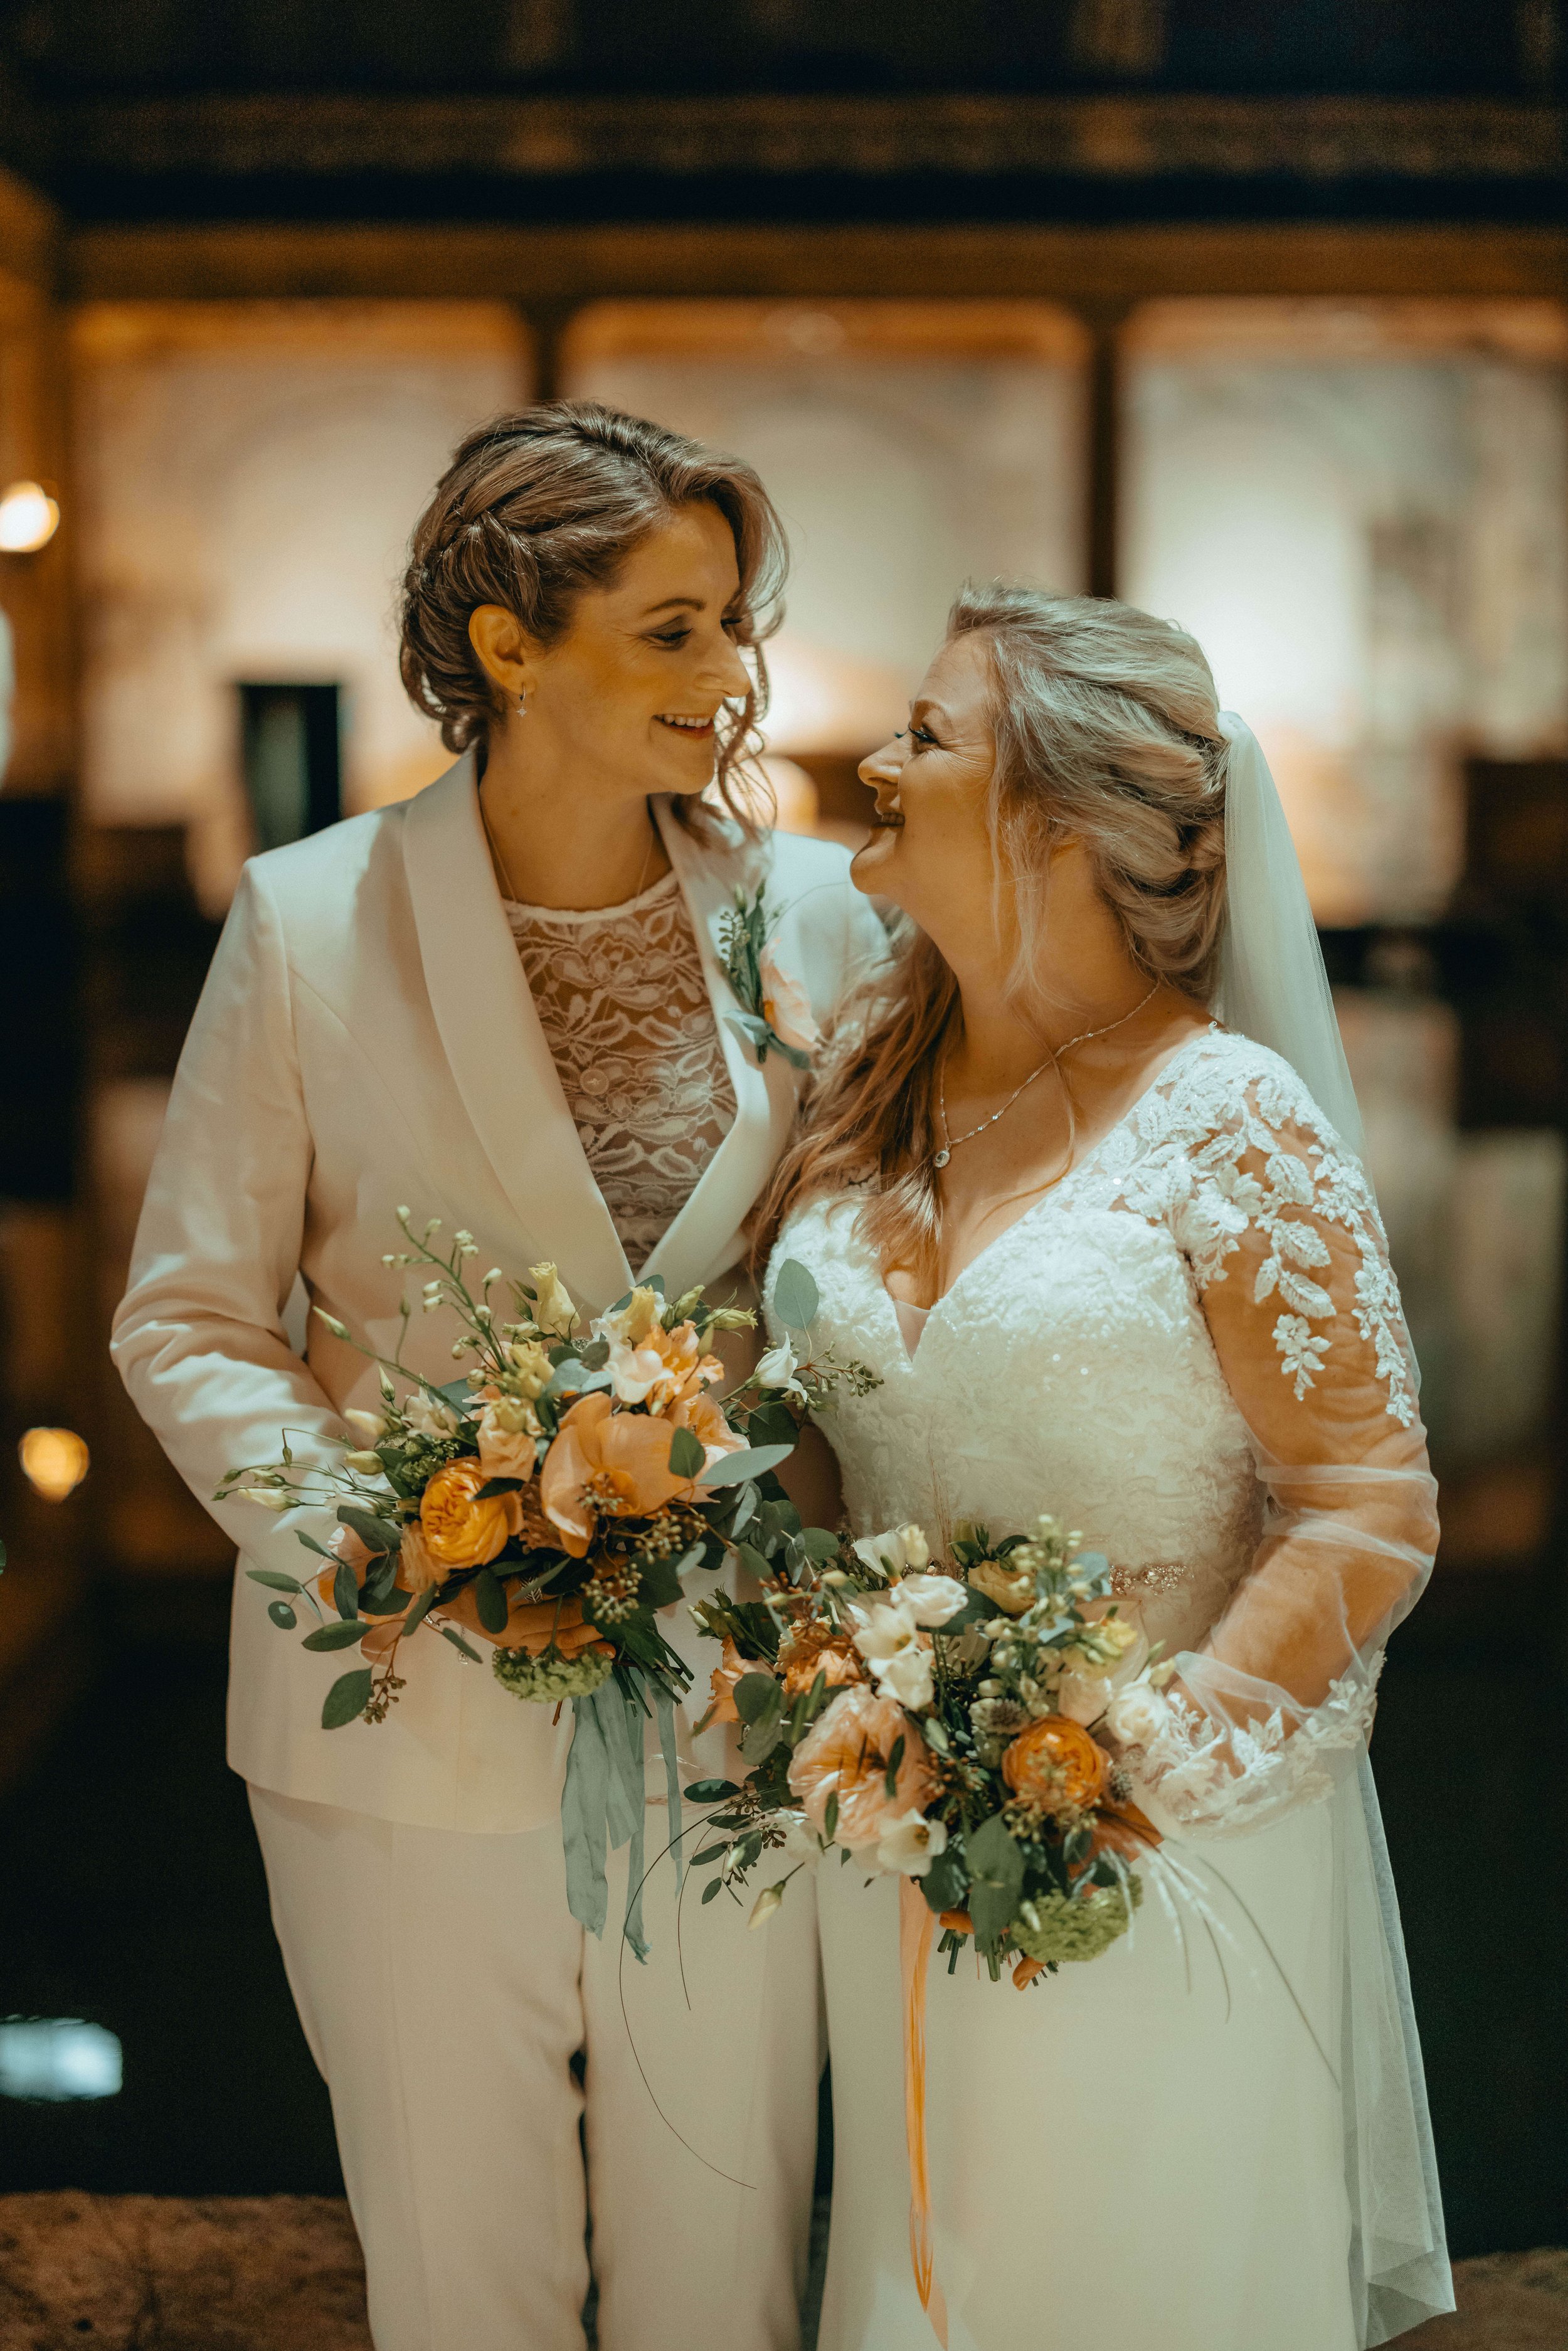 Brides-with-bouquet.jpg